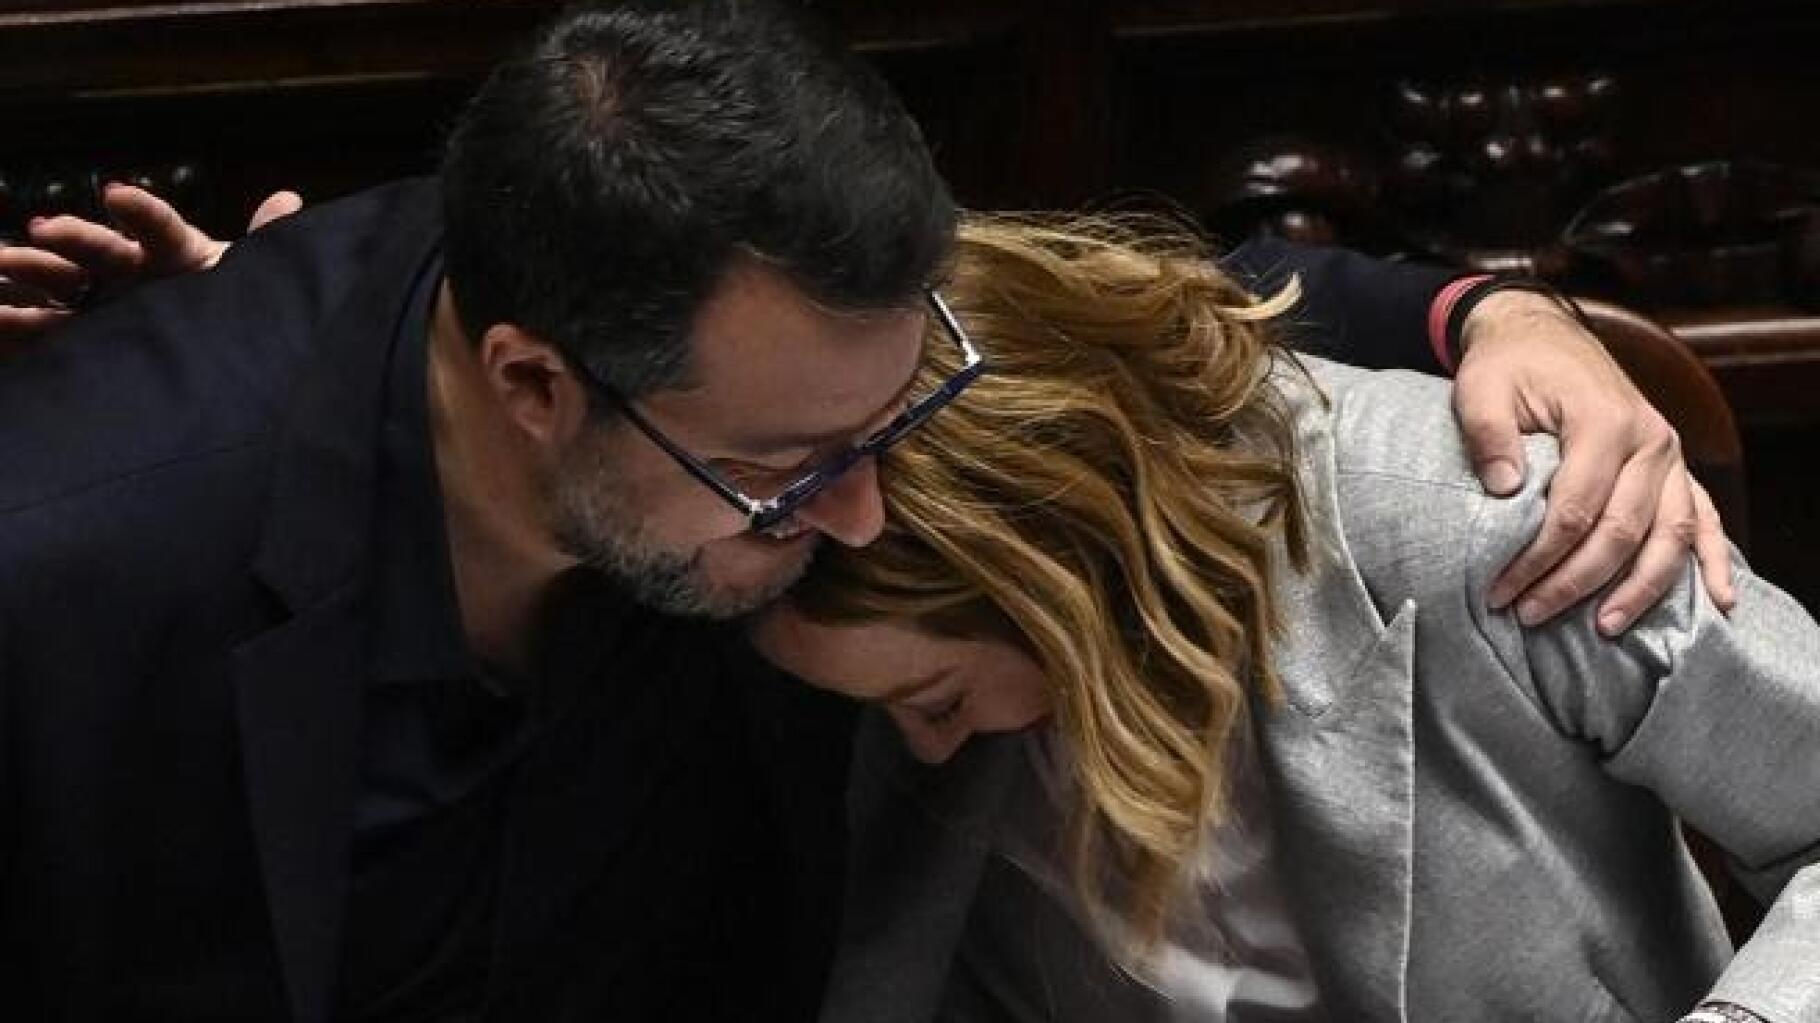 In Italia, Meloni e Salvini s'enlacent et creent la suprise au Parlement en plein Episode de tension